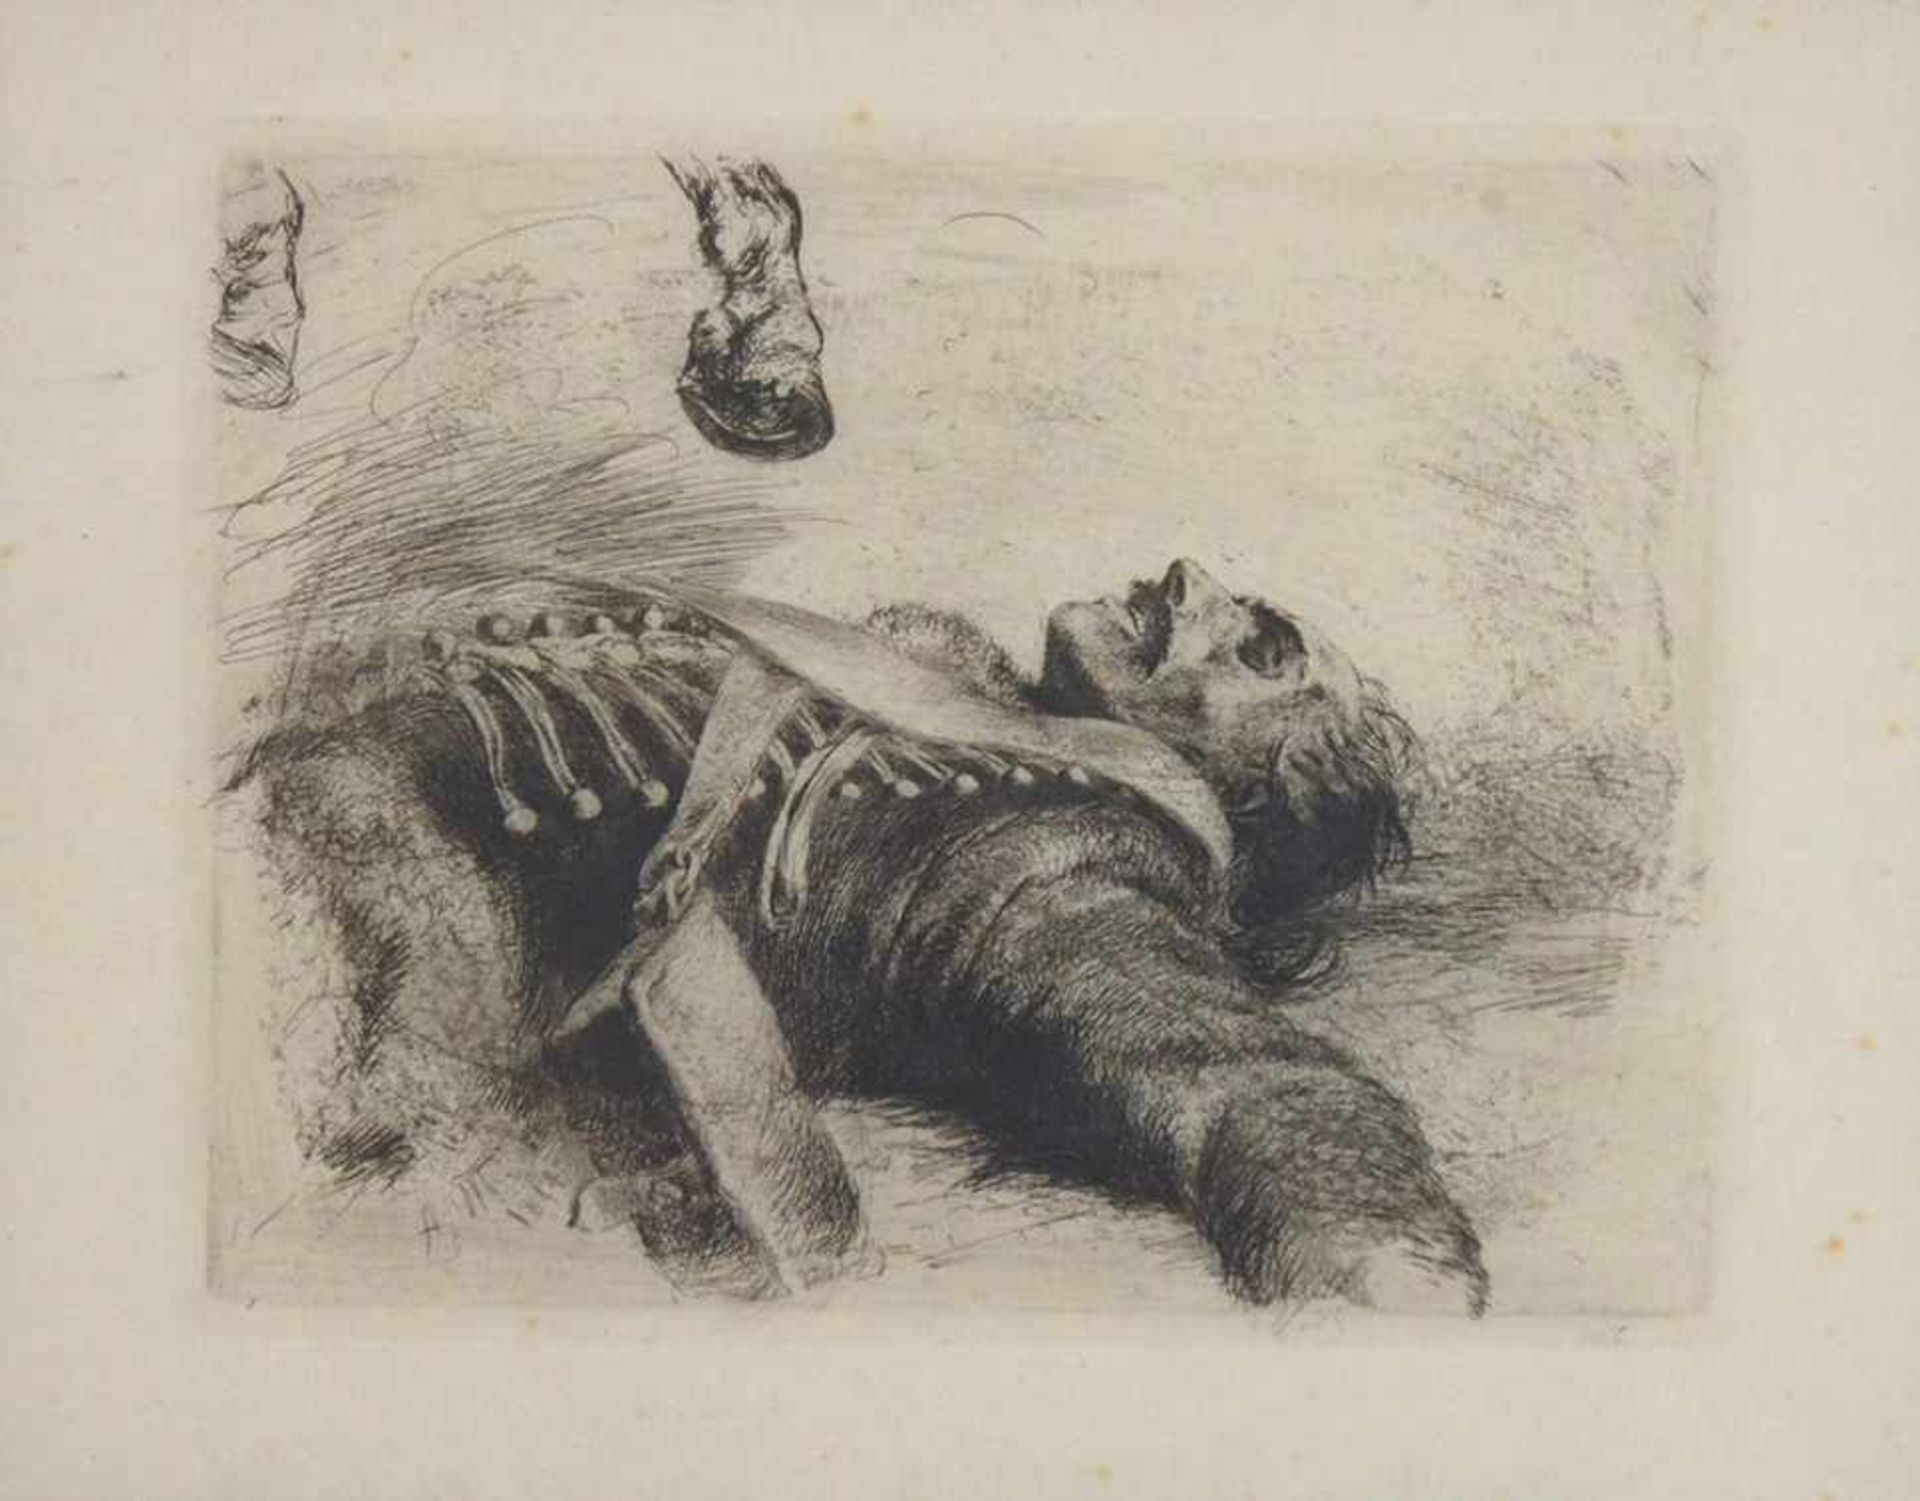 MENZEL, Adolf von1815-1905Der tote HusarRadierung, 1844, 15,5 x 20 cm, gerahmt unter Glas und